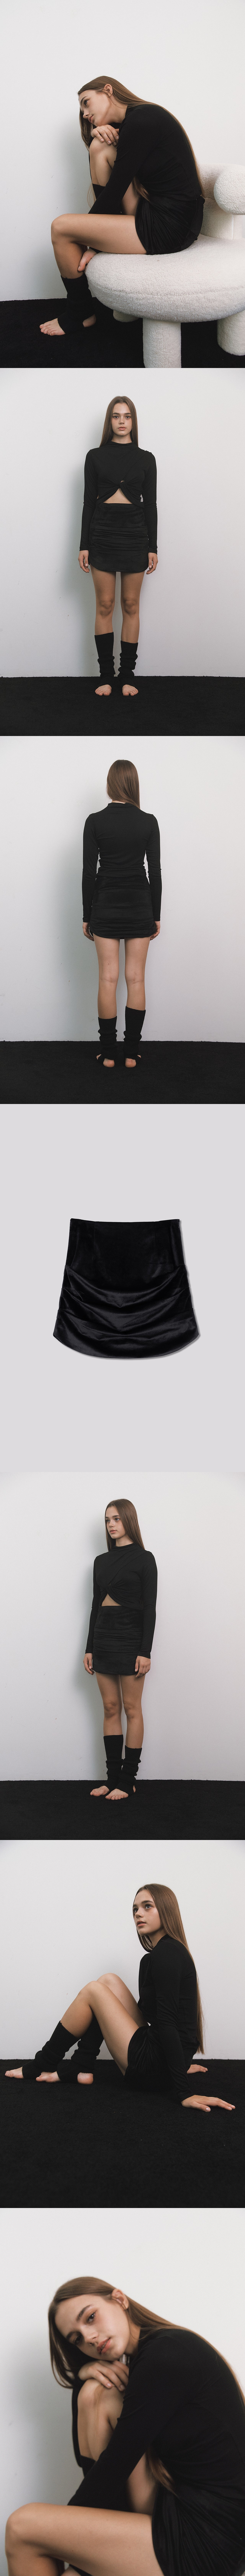 Velvet Draping Skirt Black